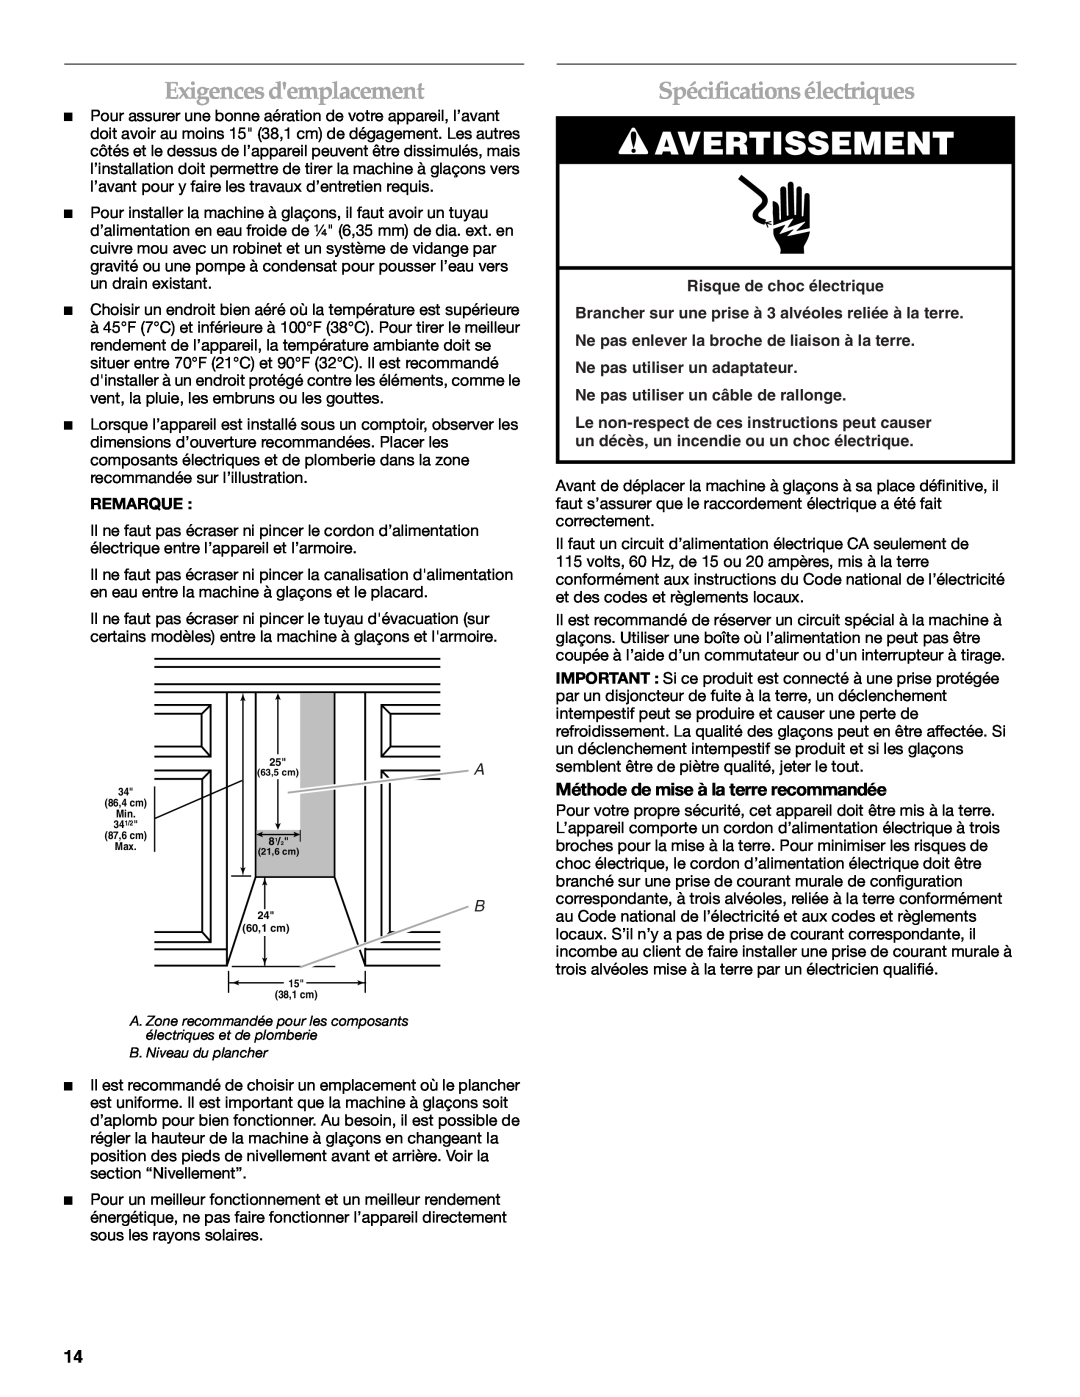 KitchenAid KUIO15NNLS manual Exigences demplacement, Spécifications électriques, Méthode de mise à la terre recommandée 